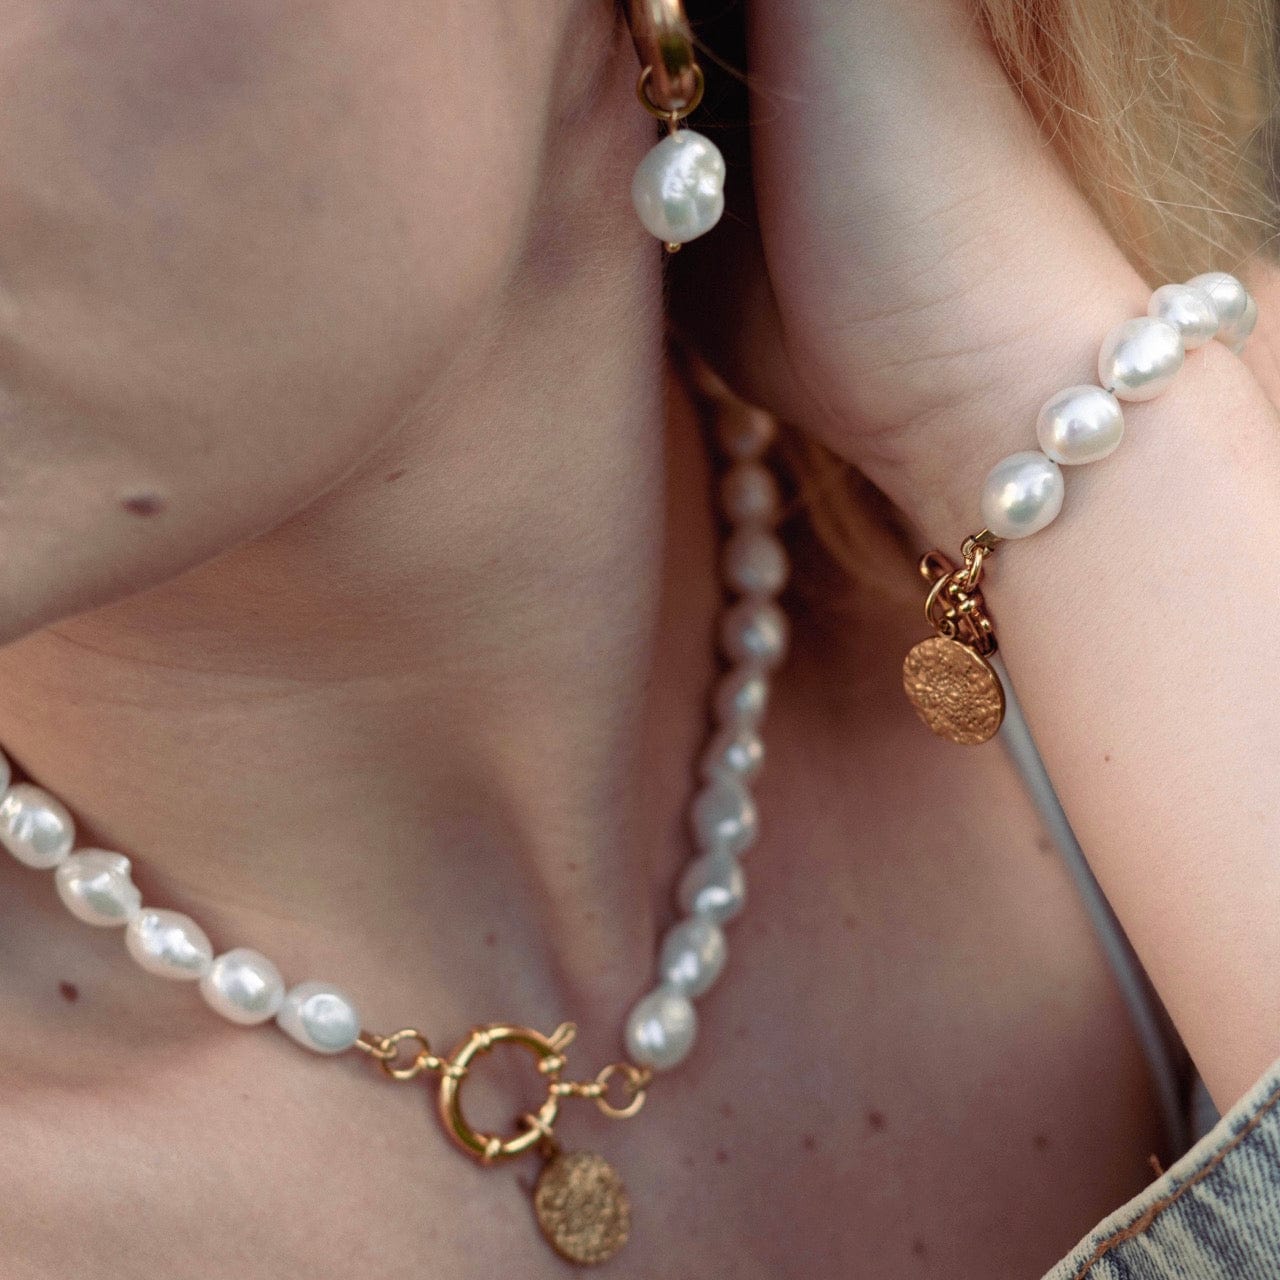 Stříbrný náramek s perlou, Náramek z mořských perel,  Náramek z říčních perel,  Náramek z pravých perel,  Perlový náramek bižuterie, perlový náramek s karabinkou,  Perlové šperky, perlový náramek, náramek bílé říční perly, perly, říční perly